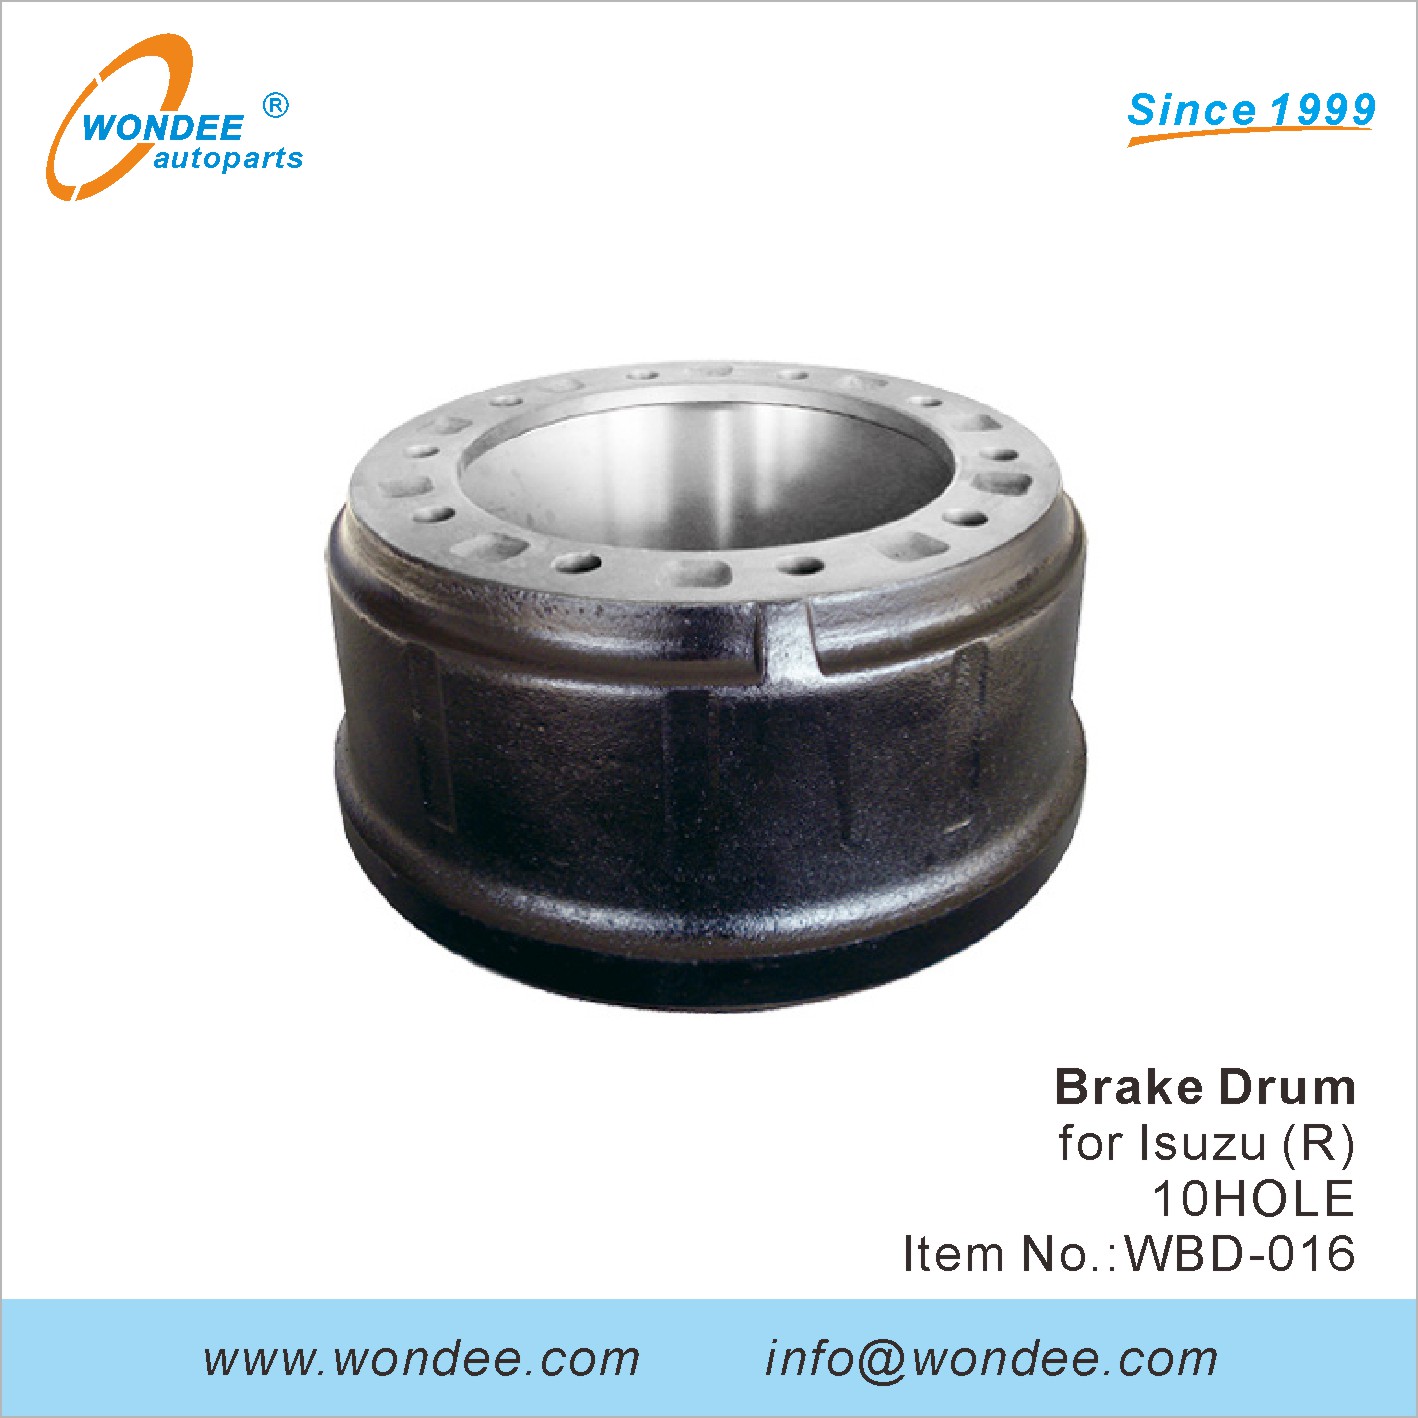 WONDEE brake drum (16)